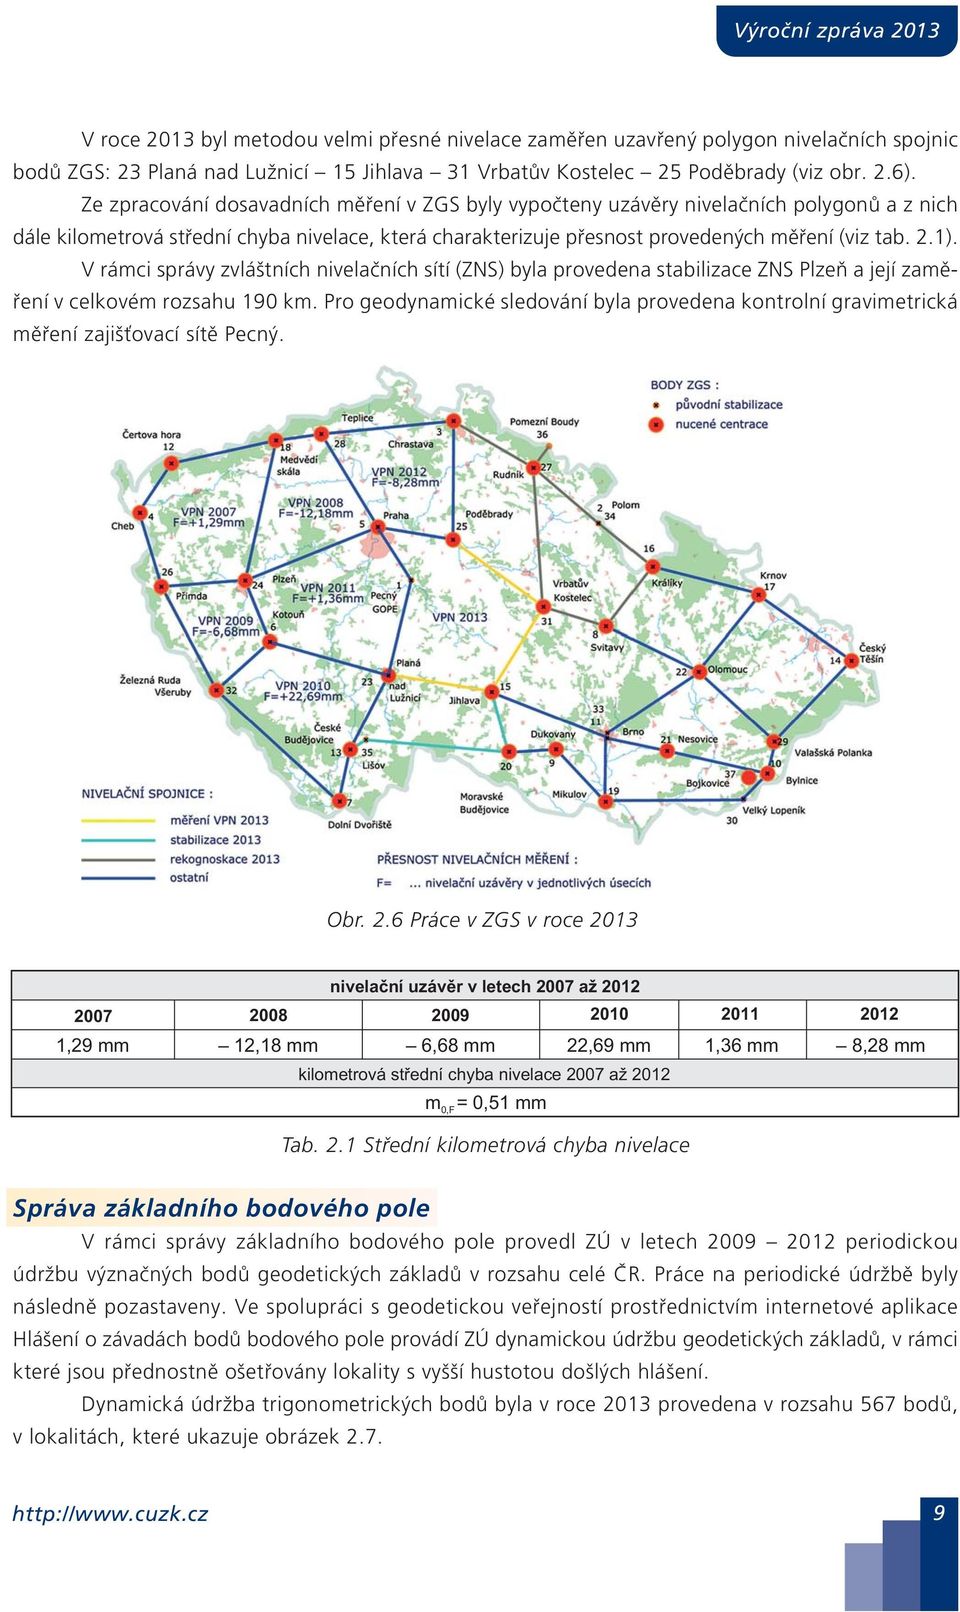 V rámci správy zvláštních nivelačních sítí (ZNS) byla provedena stabilizace ZNS Plzeň a její zaměření v celkovém rozsahu 190 km.